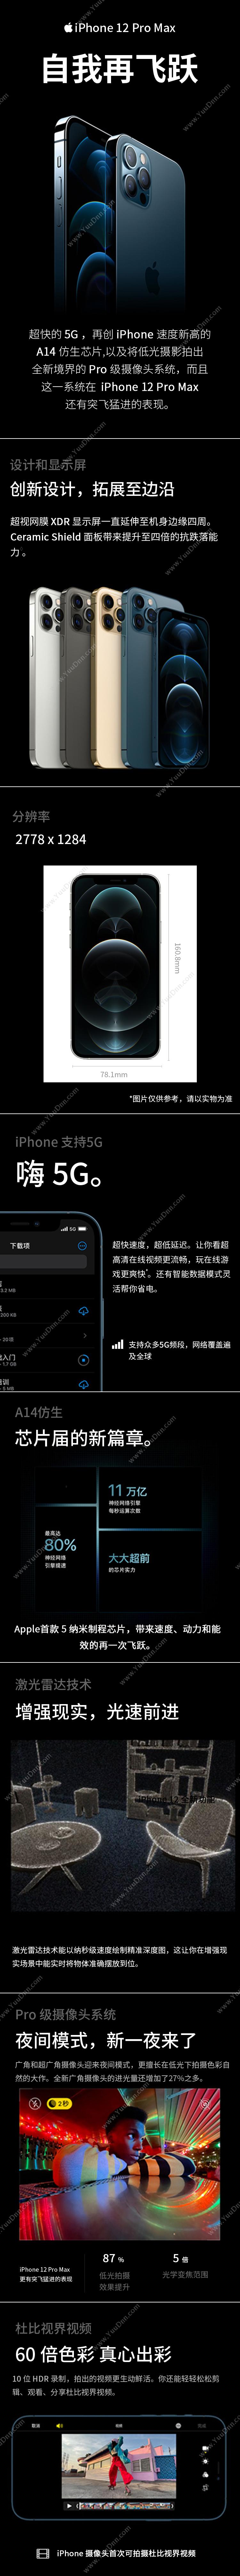 苹果 Apple iPhone 12 ProMax (MGC73CH/A) 256G 海蓝色 移动联通电信5G手机 手机